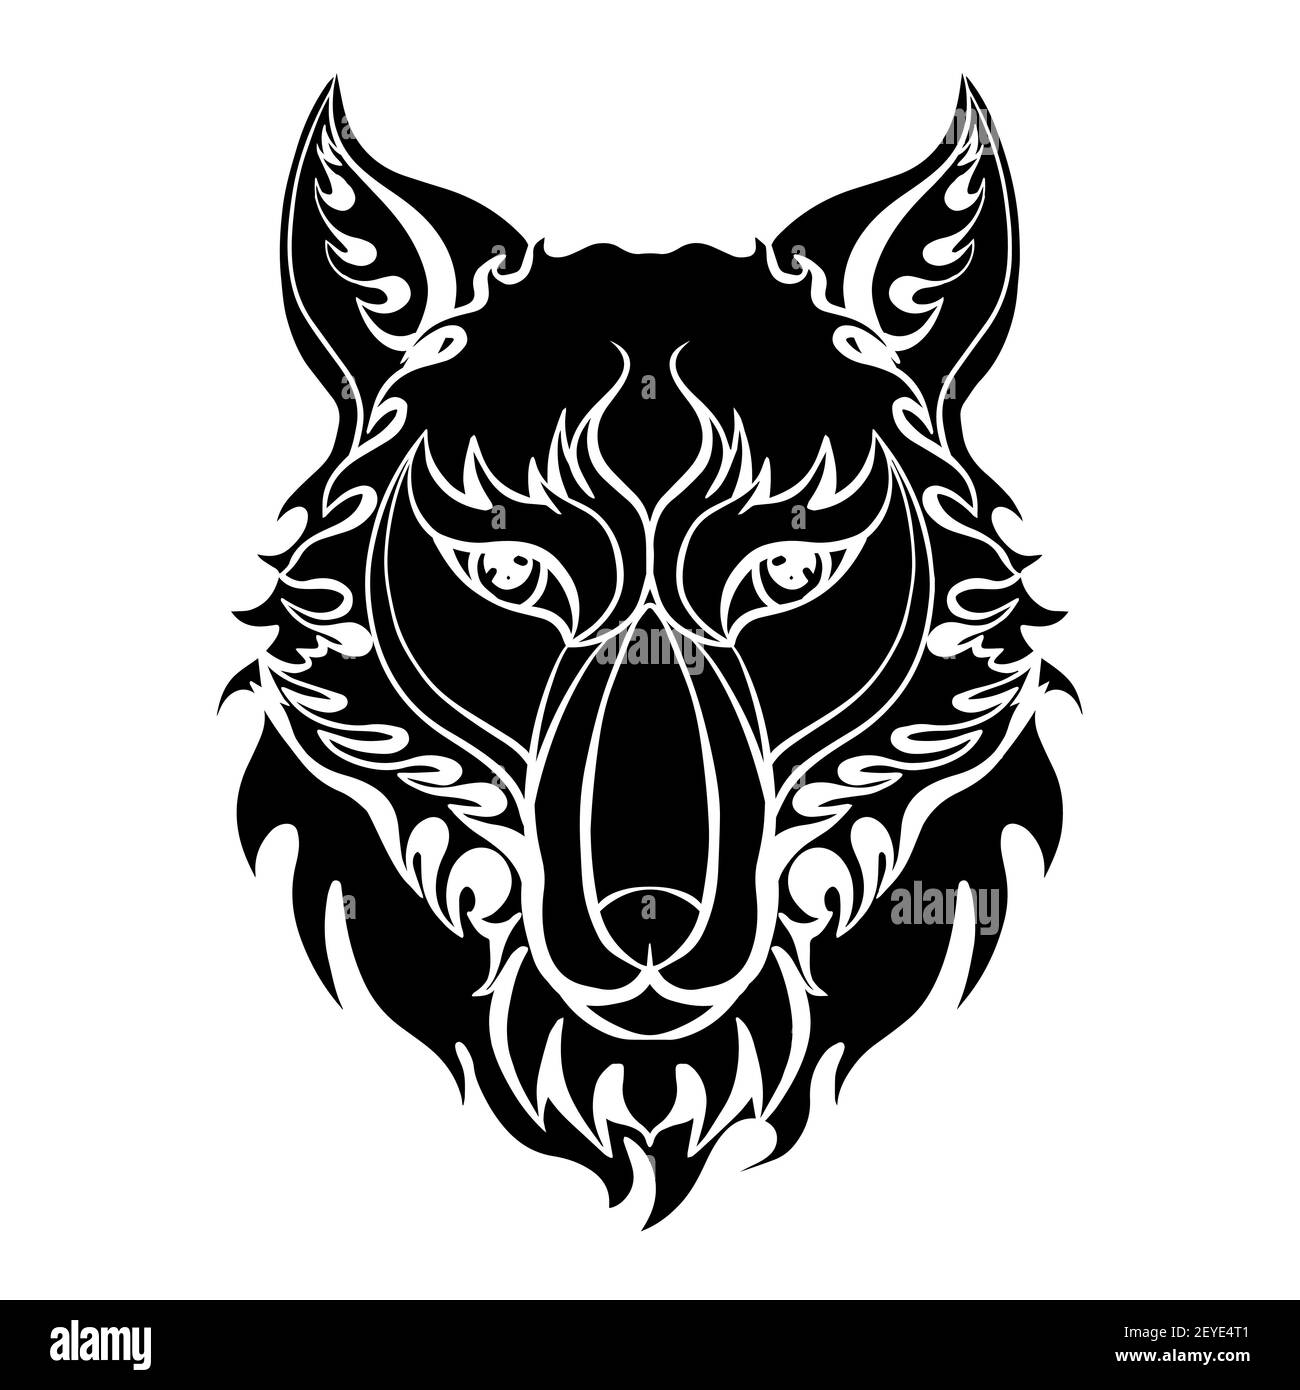 Tatuaje de lobo Imágenes de stock en blanco y negro - Página 2 - Alamy